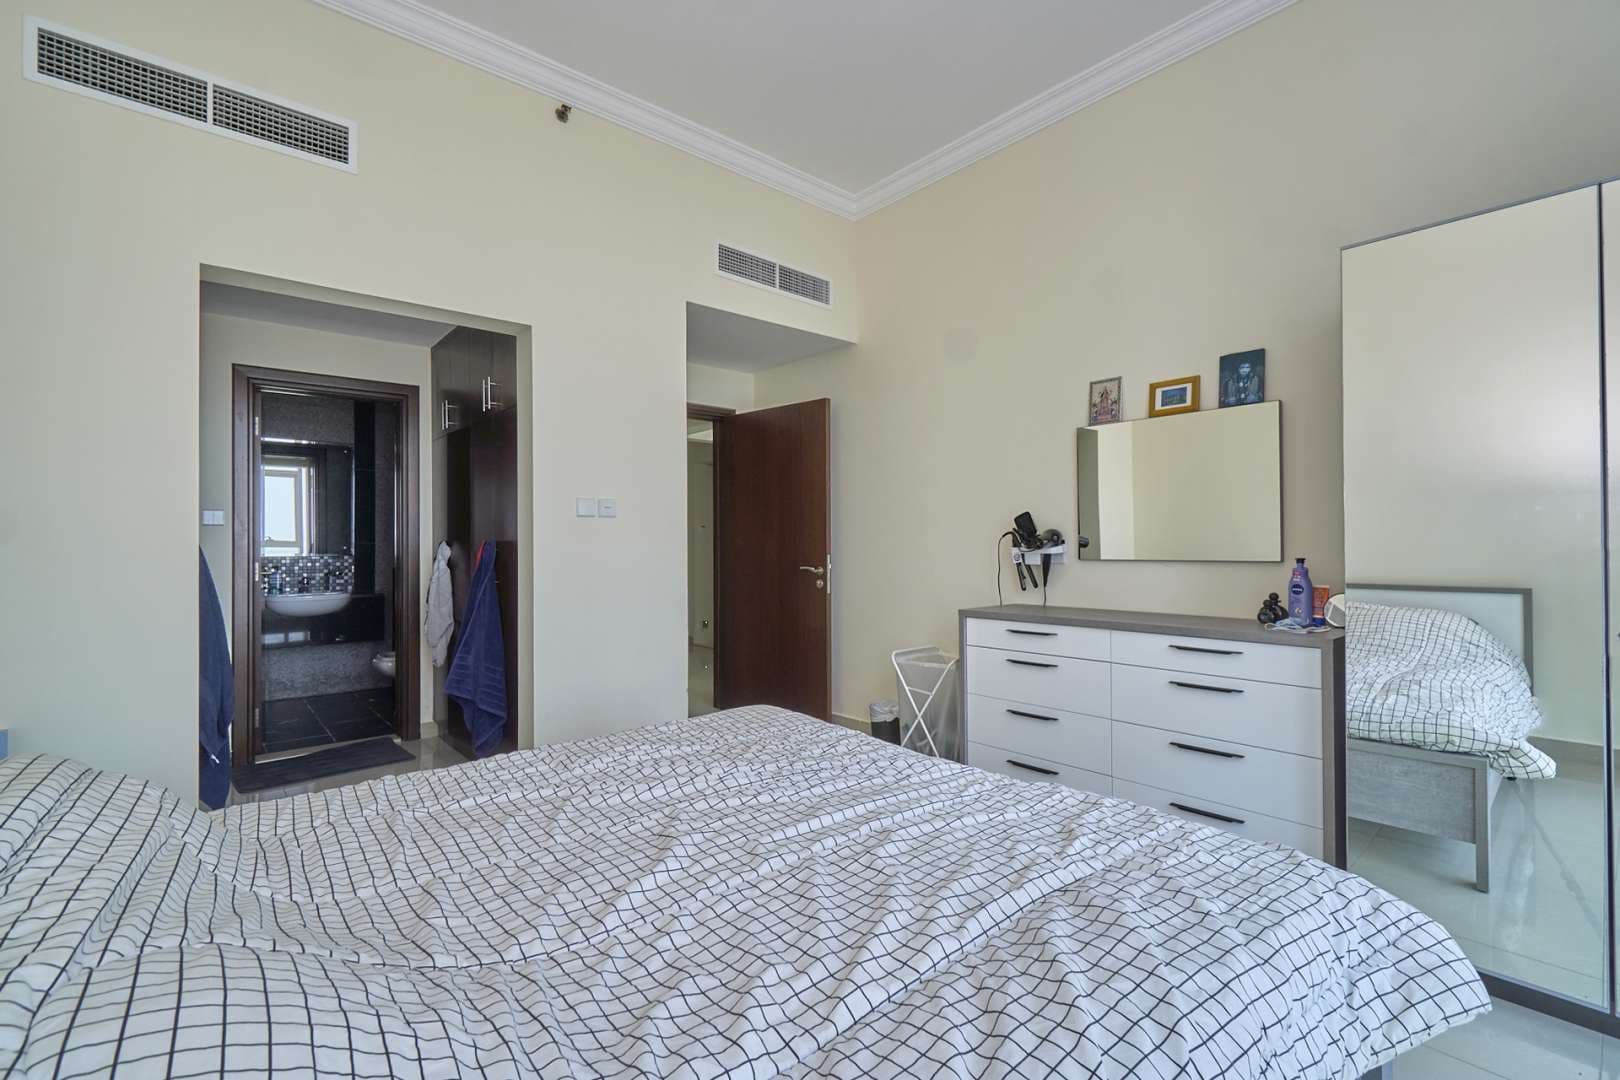 1 Bedroom Apartment For Sale Fairview Residency Lp08060 11ab35d491814e00.jpg